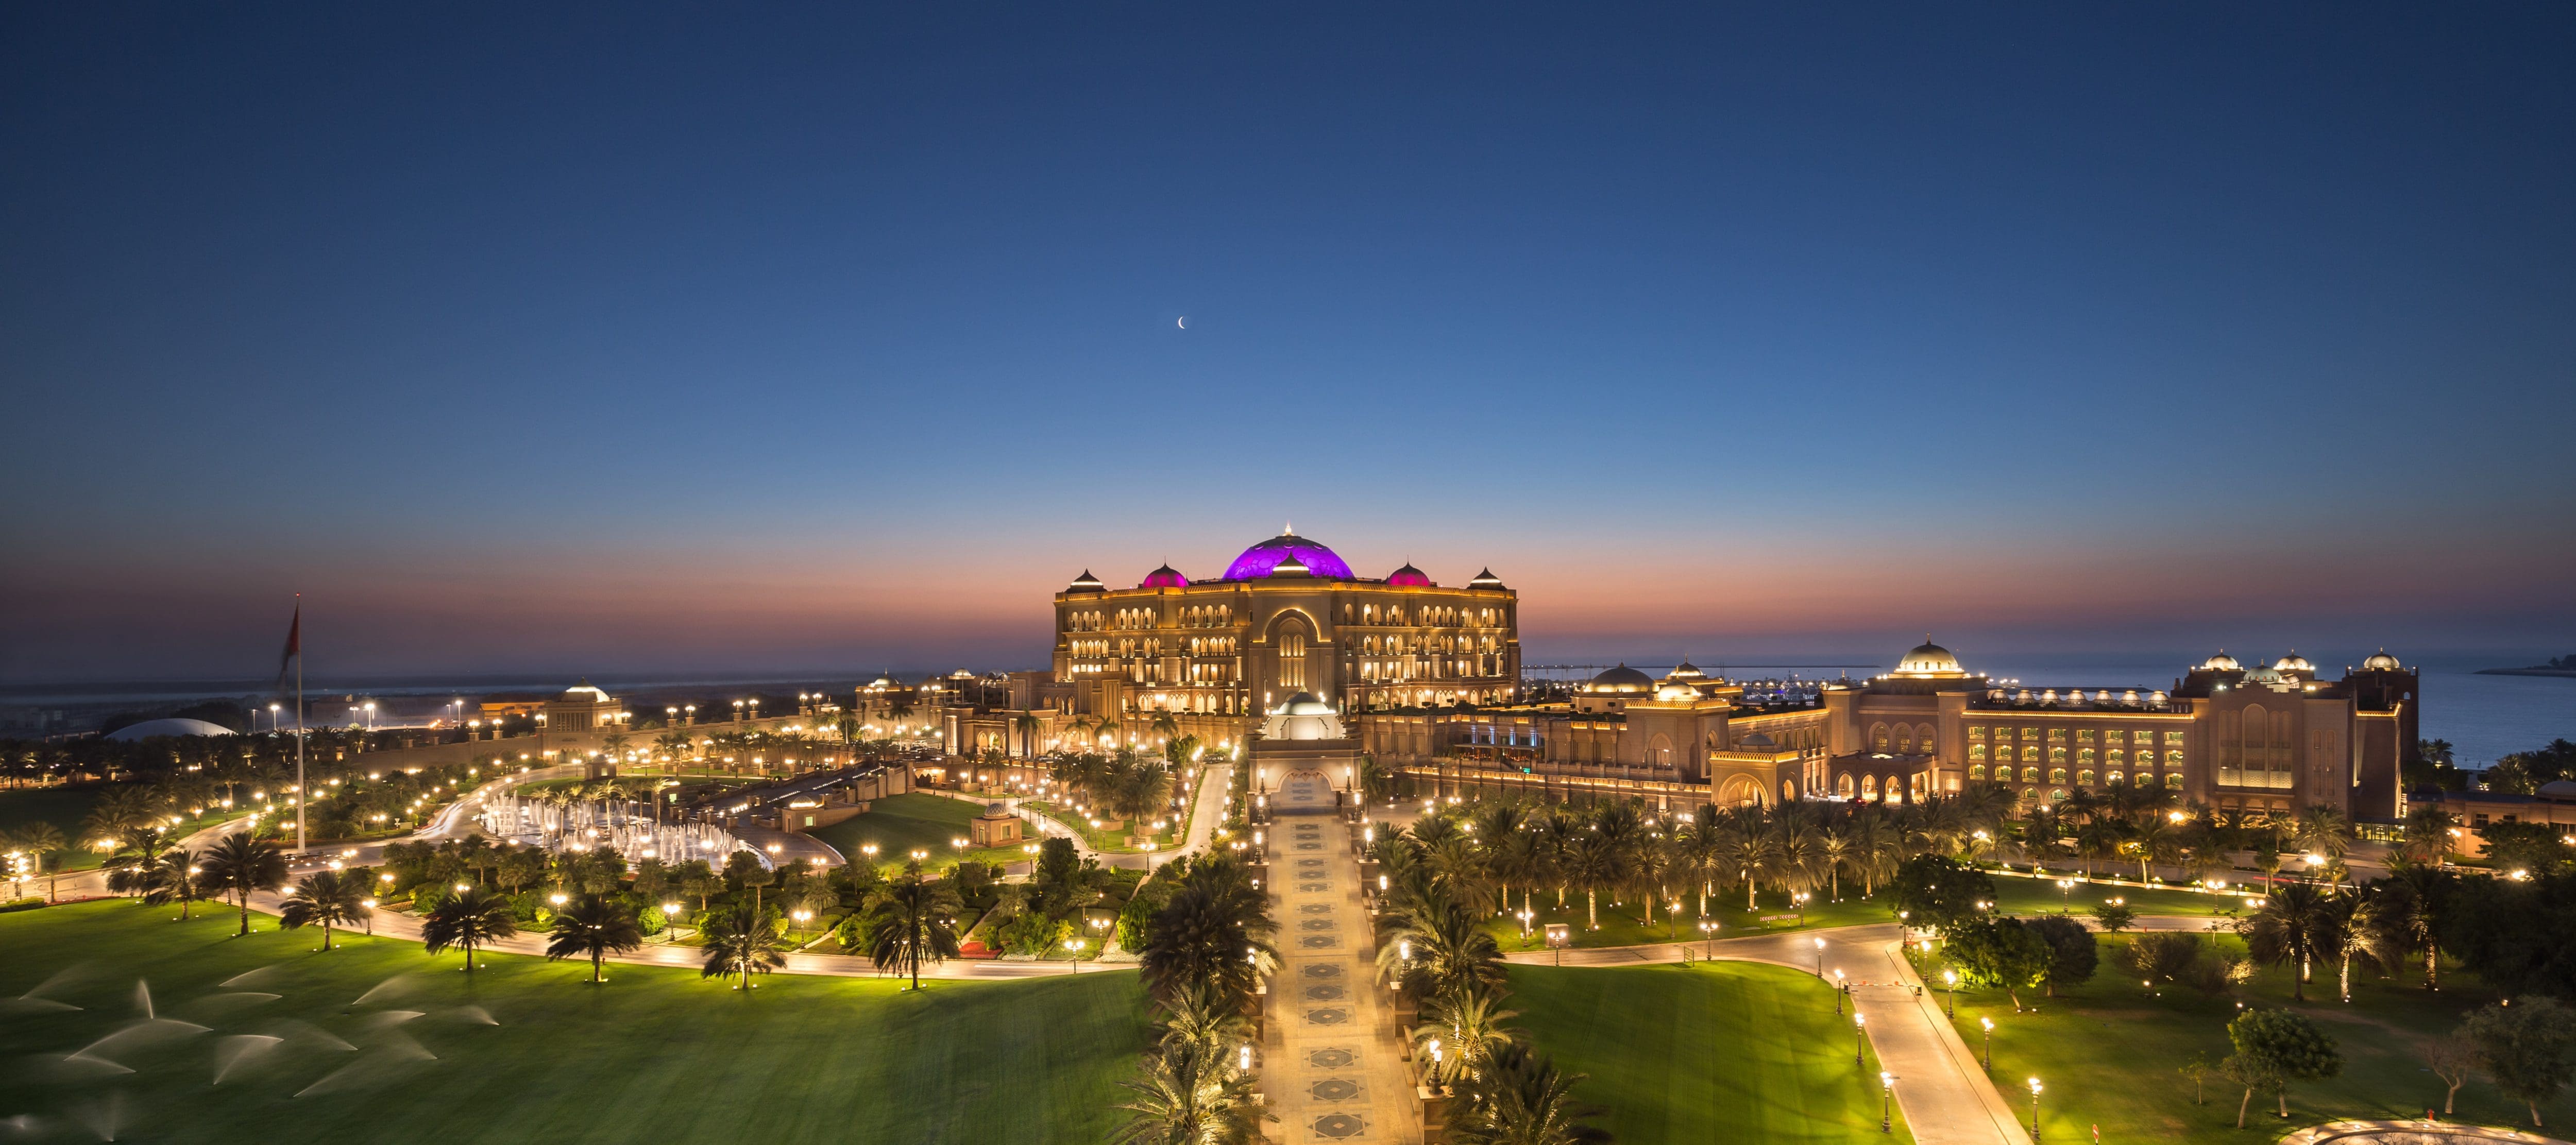 Luxury 5 Star Hotel | Abu Dhabi | Emirates Palace